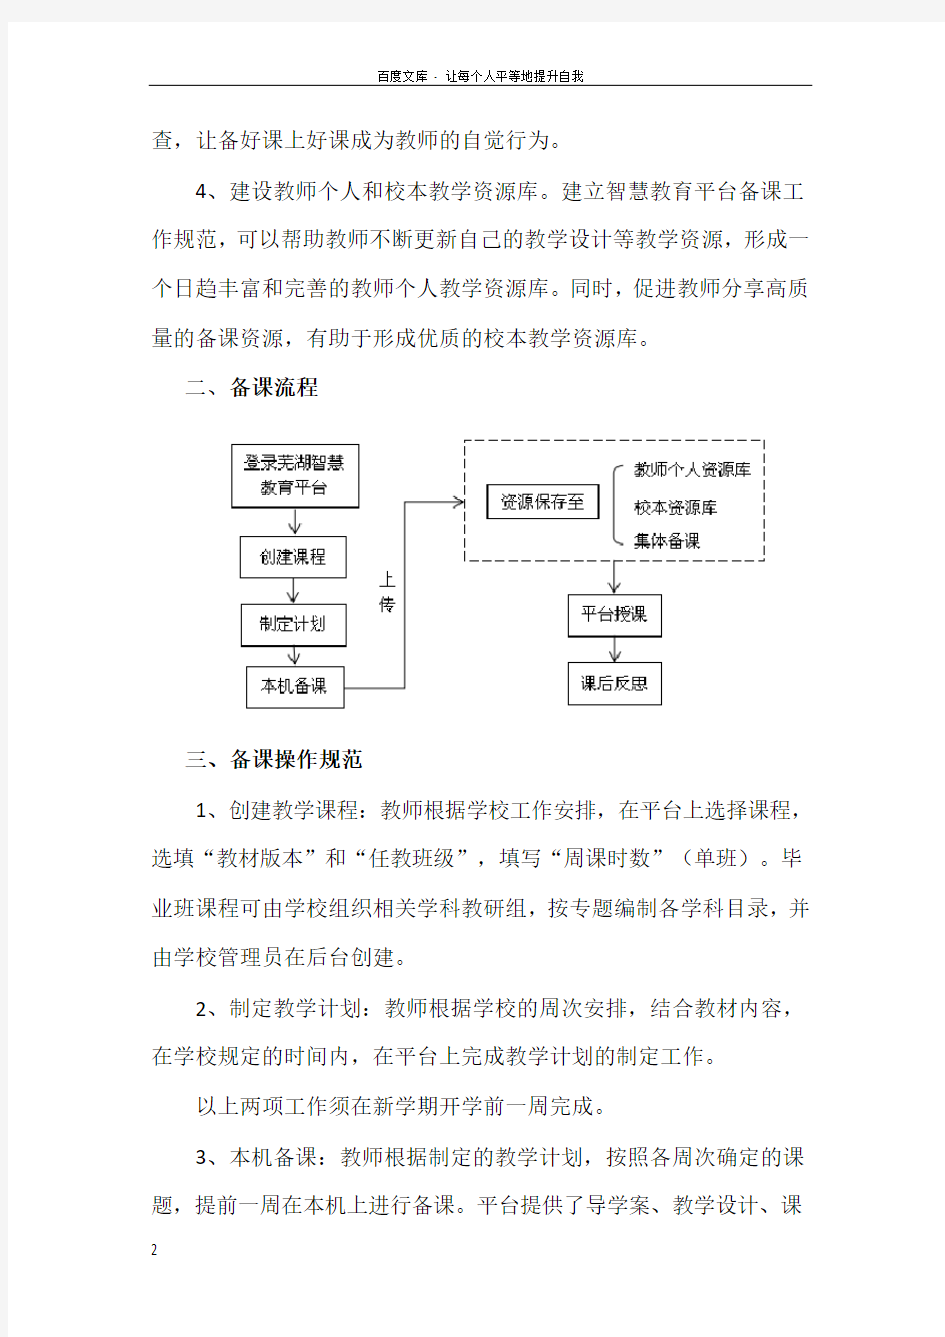 芜湖智慧教育平台备课工作管理规范指引